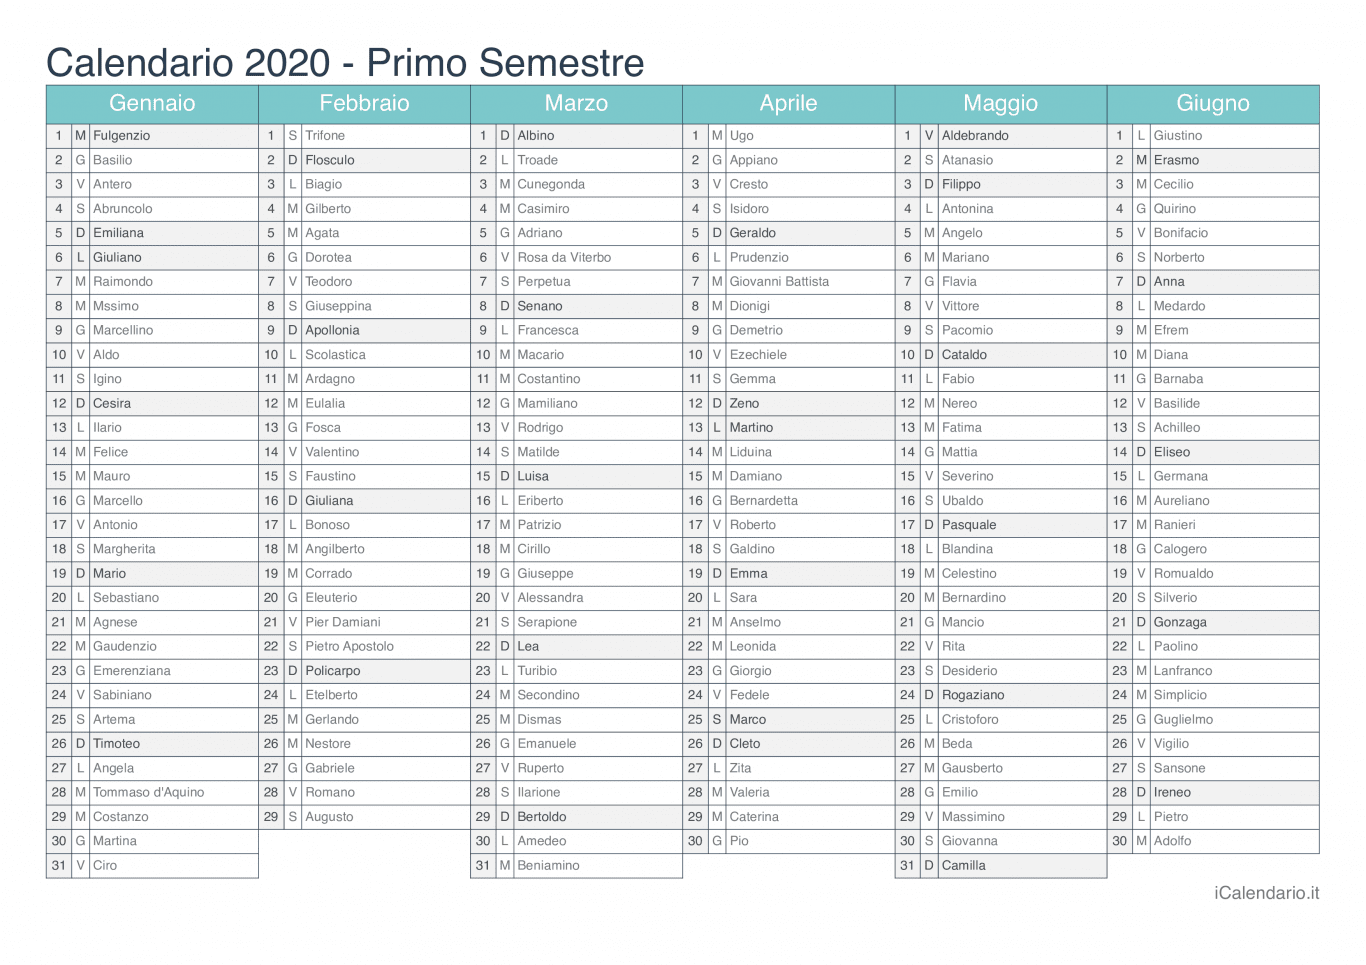 Calendario semestrale 2020 con santi e festivi - Turchese